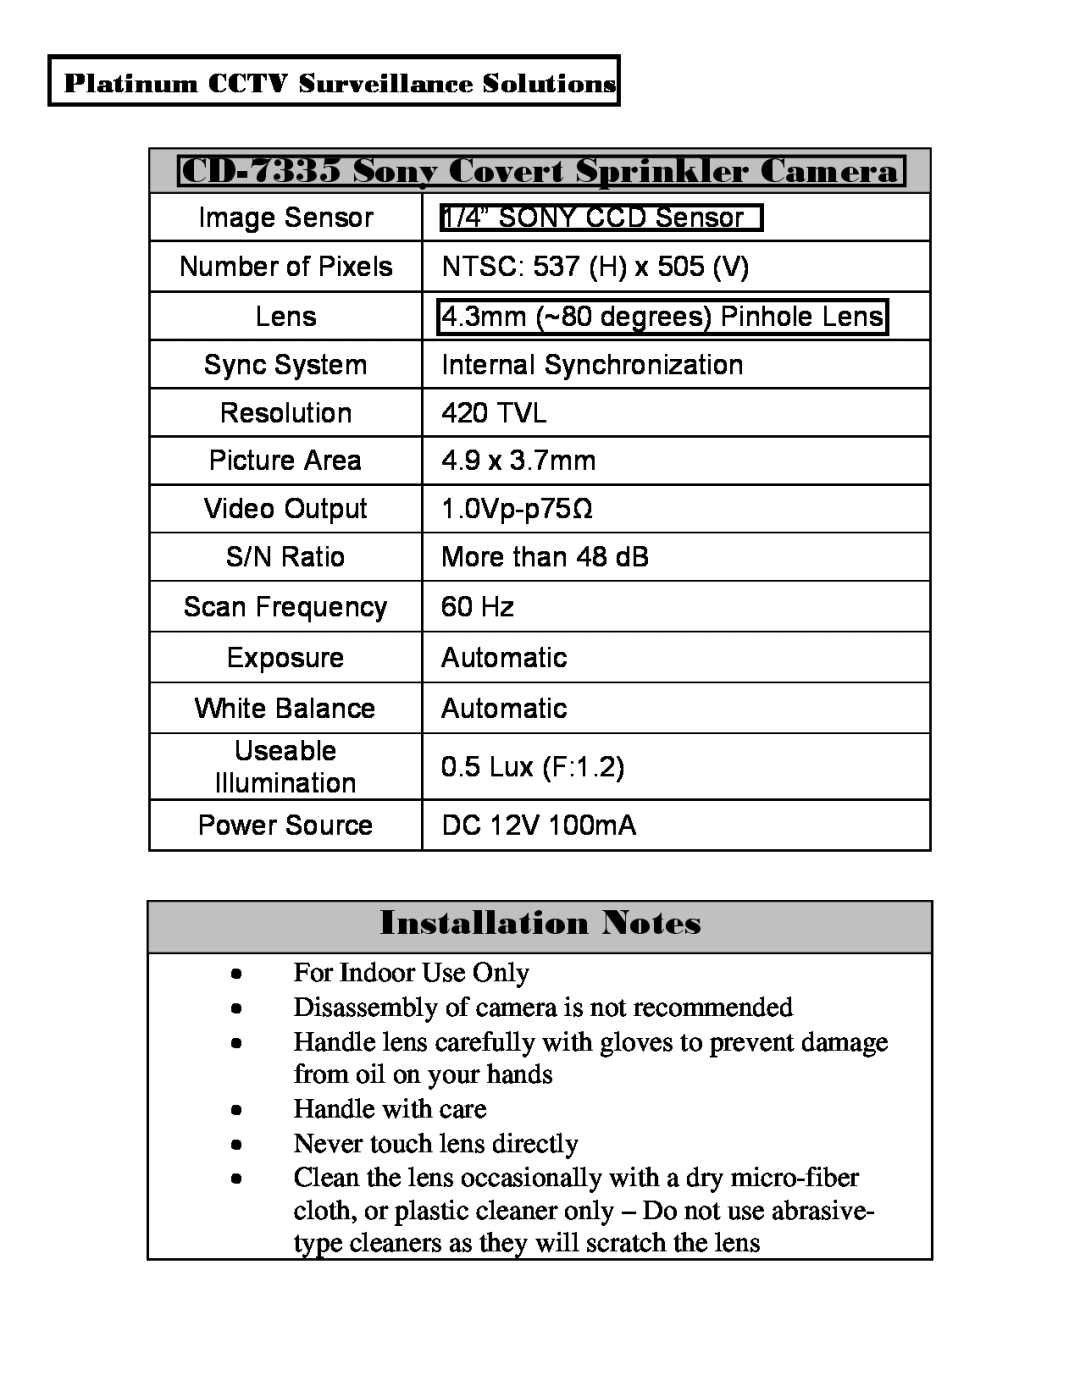 Sony installation manual CD-7335Sony Covert Sprinkler Camera, Installation Notes, Platinum CCTV Surveillance Solutions 